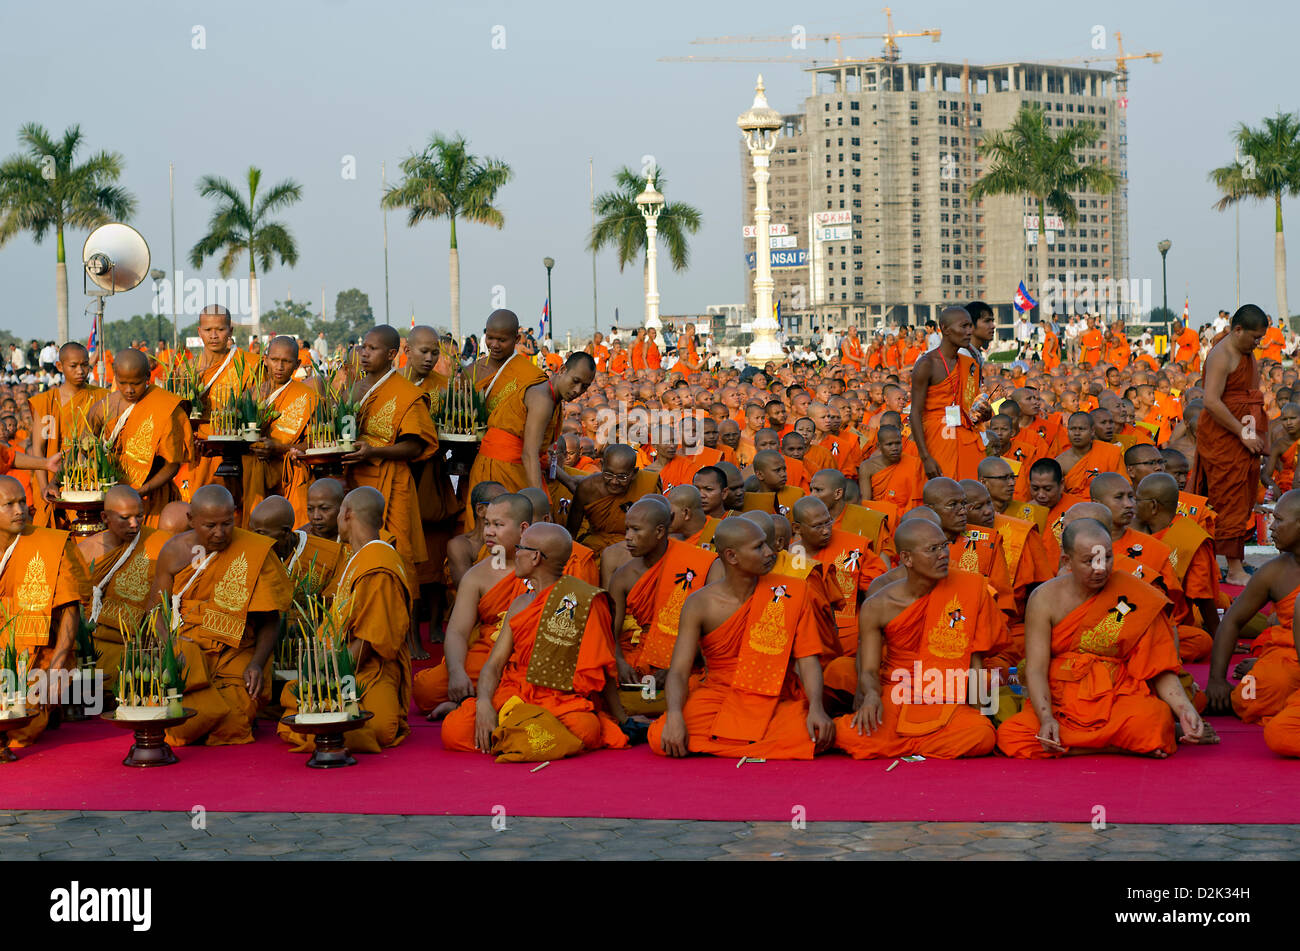 Phnom Penh, Cambodge. 26 janvier, 2013. Les moines bouddhistes se rassembler devant le Palais Royal de Phnom Penh pour chanter et prier pour l'âme de feu le Roi Père Norodom Sihanouk, le 16, octobre. Banque D'Images